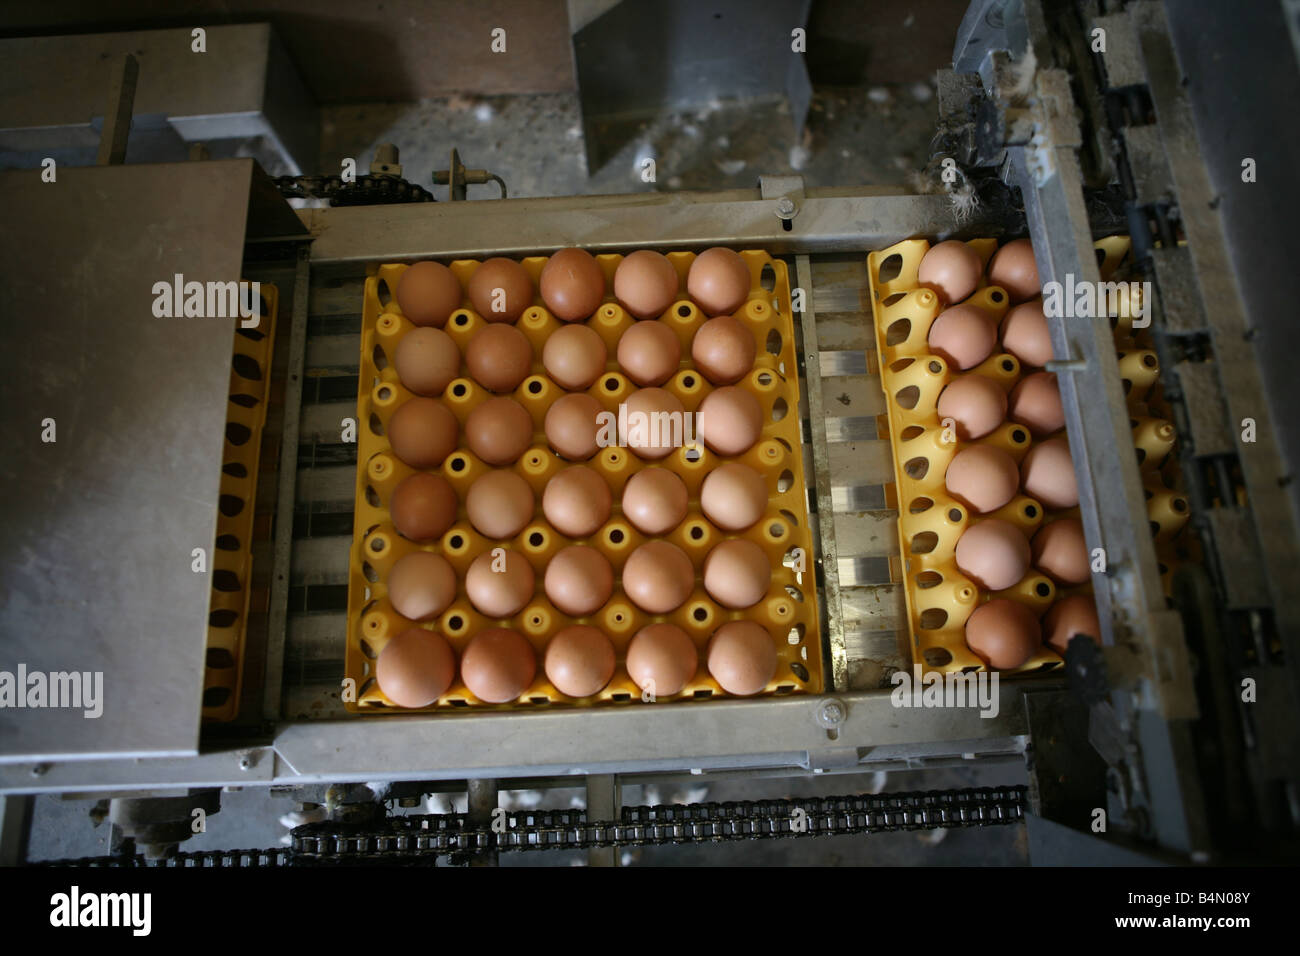 Chickenare mantenuta per produzione di uovo di pollo non sono conservati in elementi di riscontro ma può camminare liberamente massimo 9 polli per metro quadrato sono ammessi Foto Stock